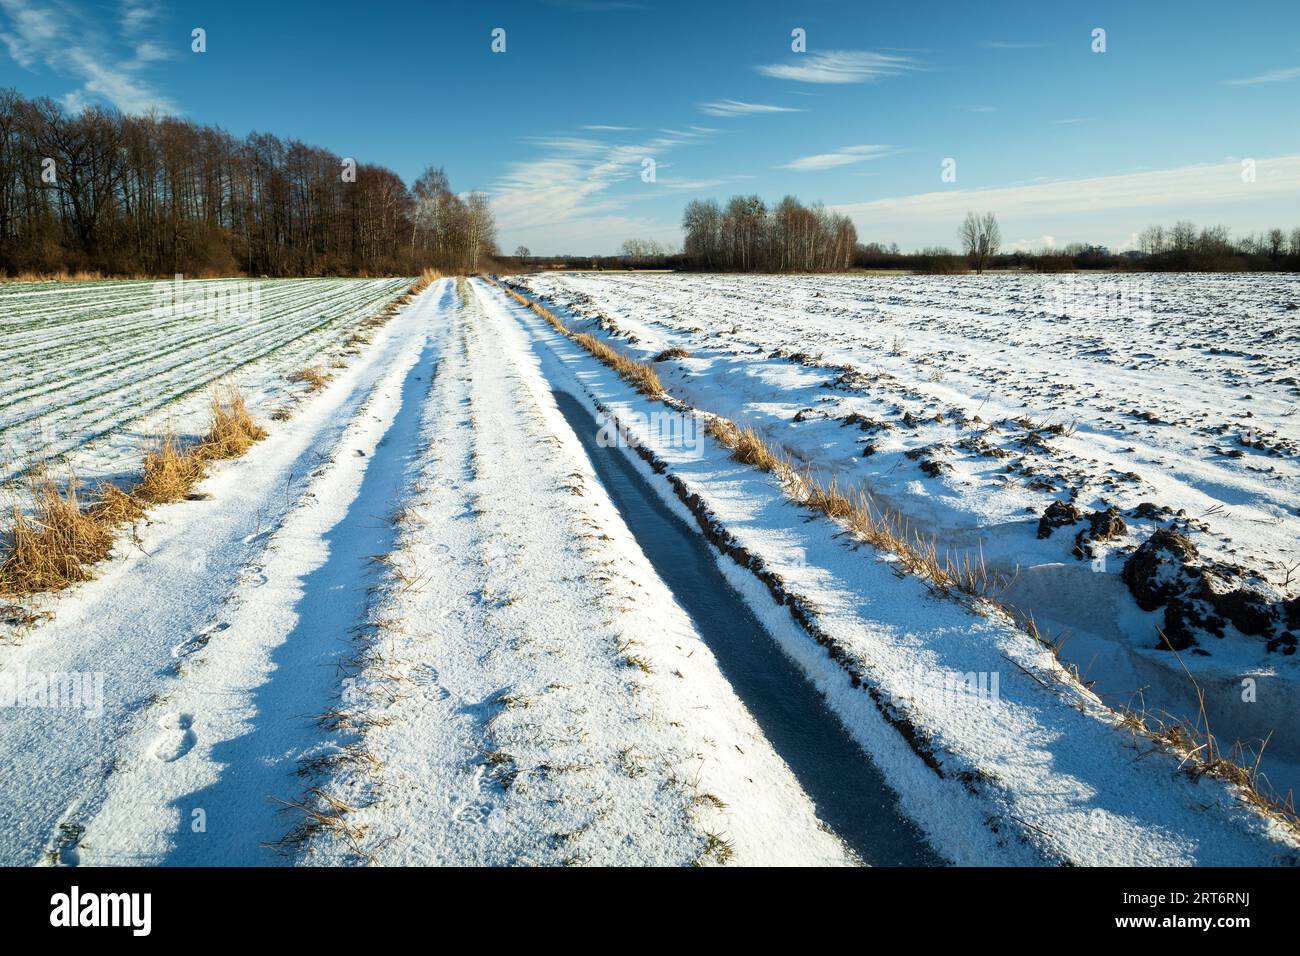 Chemin de terre couvert de neige à travers les champs, vue rurale ensoleillée d'hiver Banque D'Images